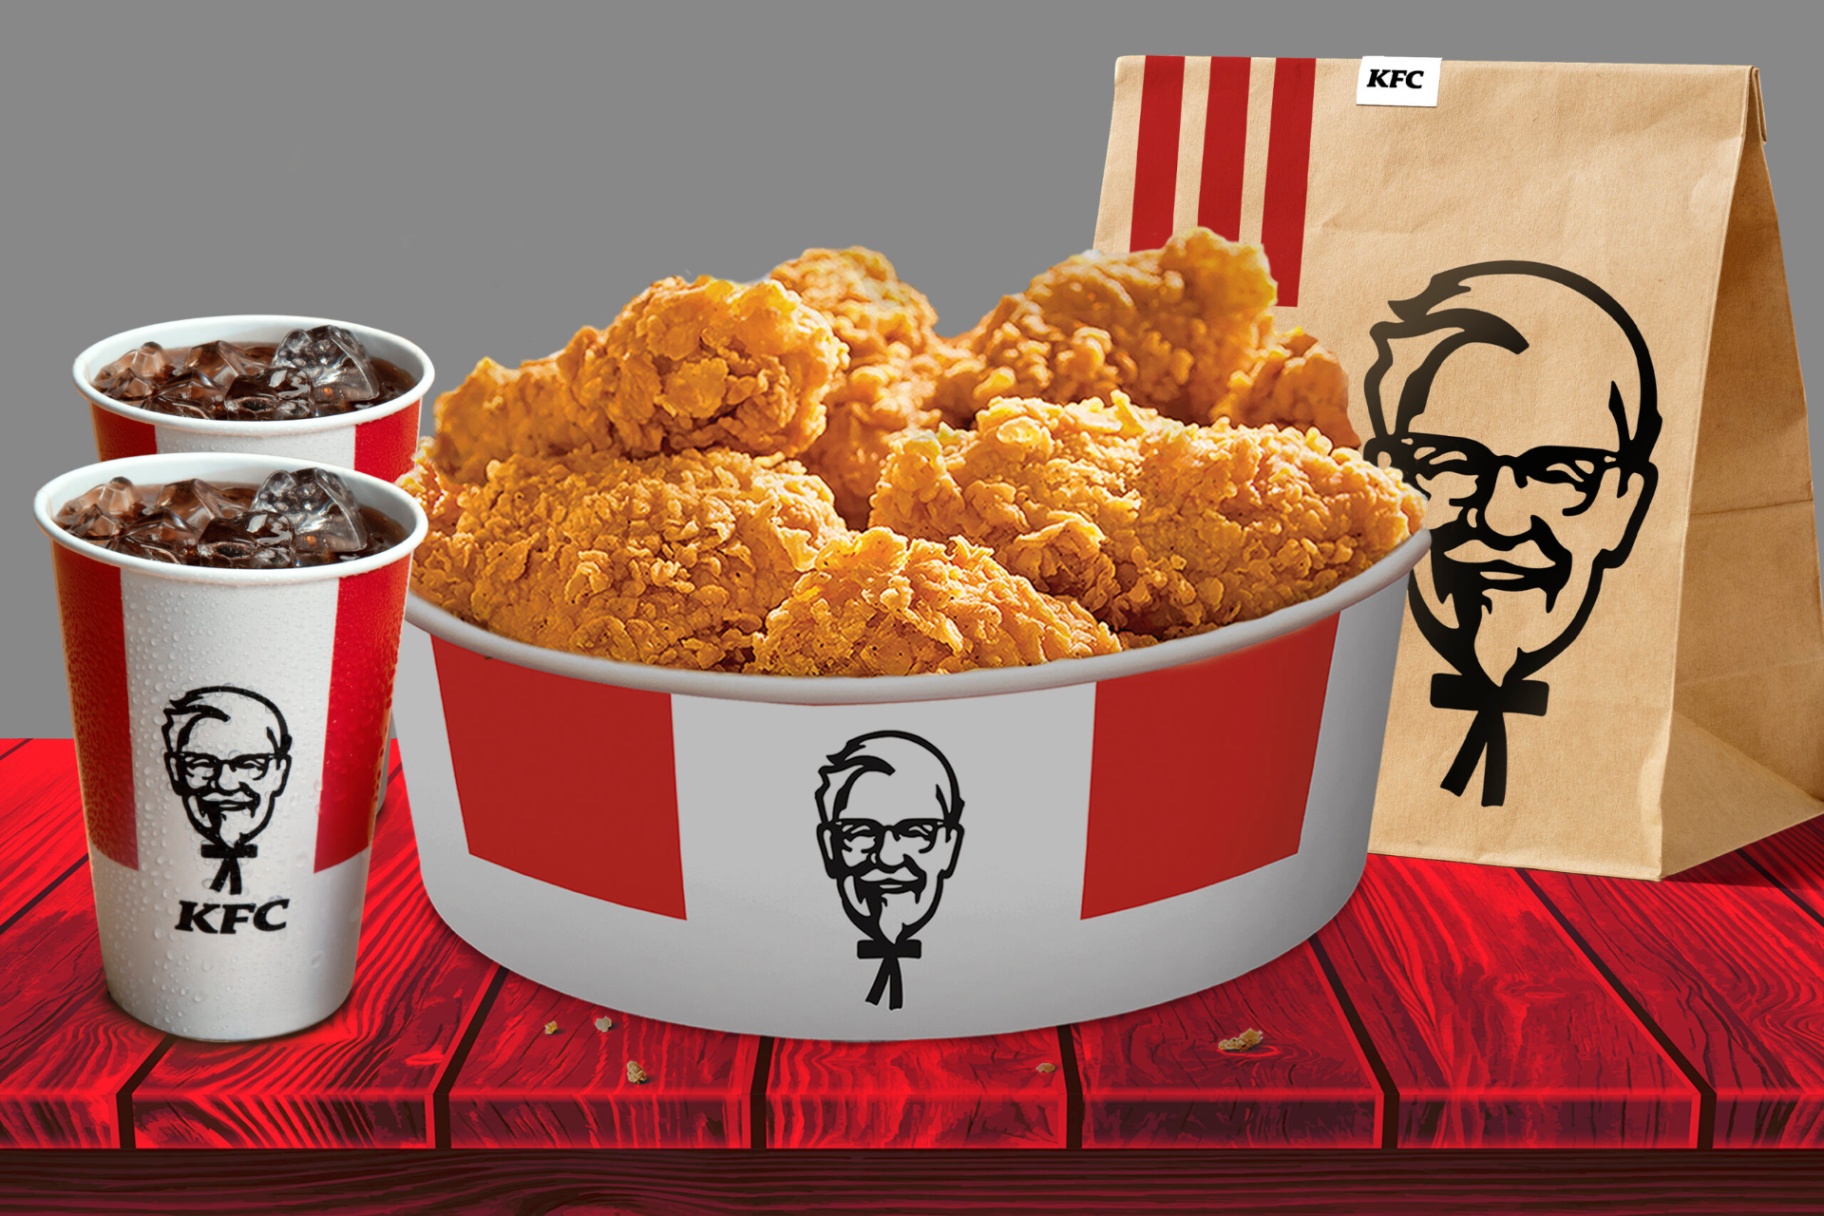 Descubre Oportunidades de Empleo en KFC - Aprende Cómo Aplicar